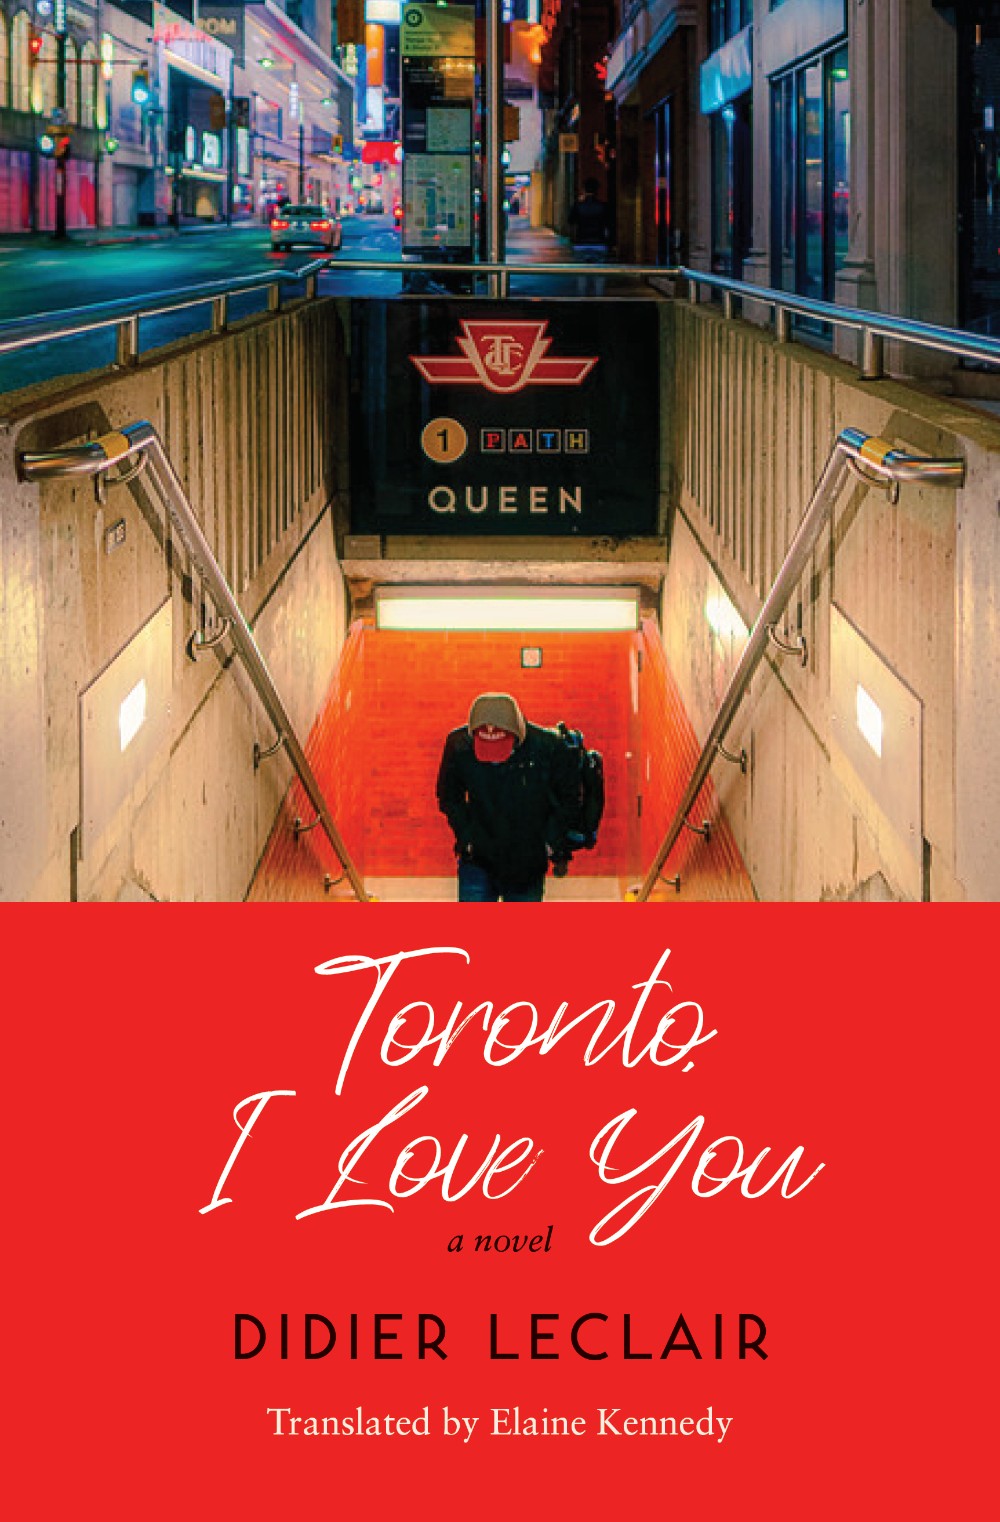 Didier Leclair’s Toronto, I Love You